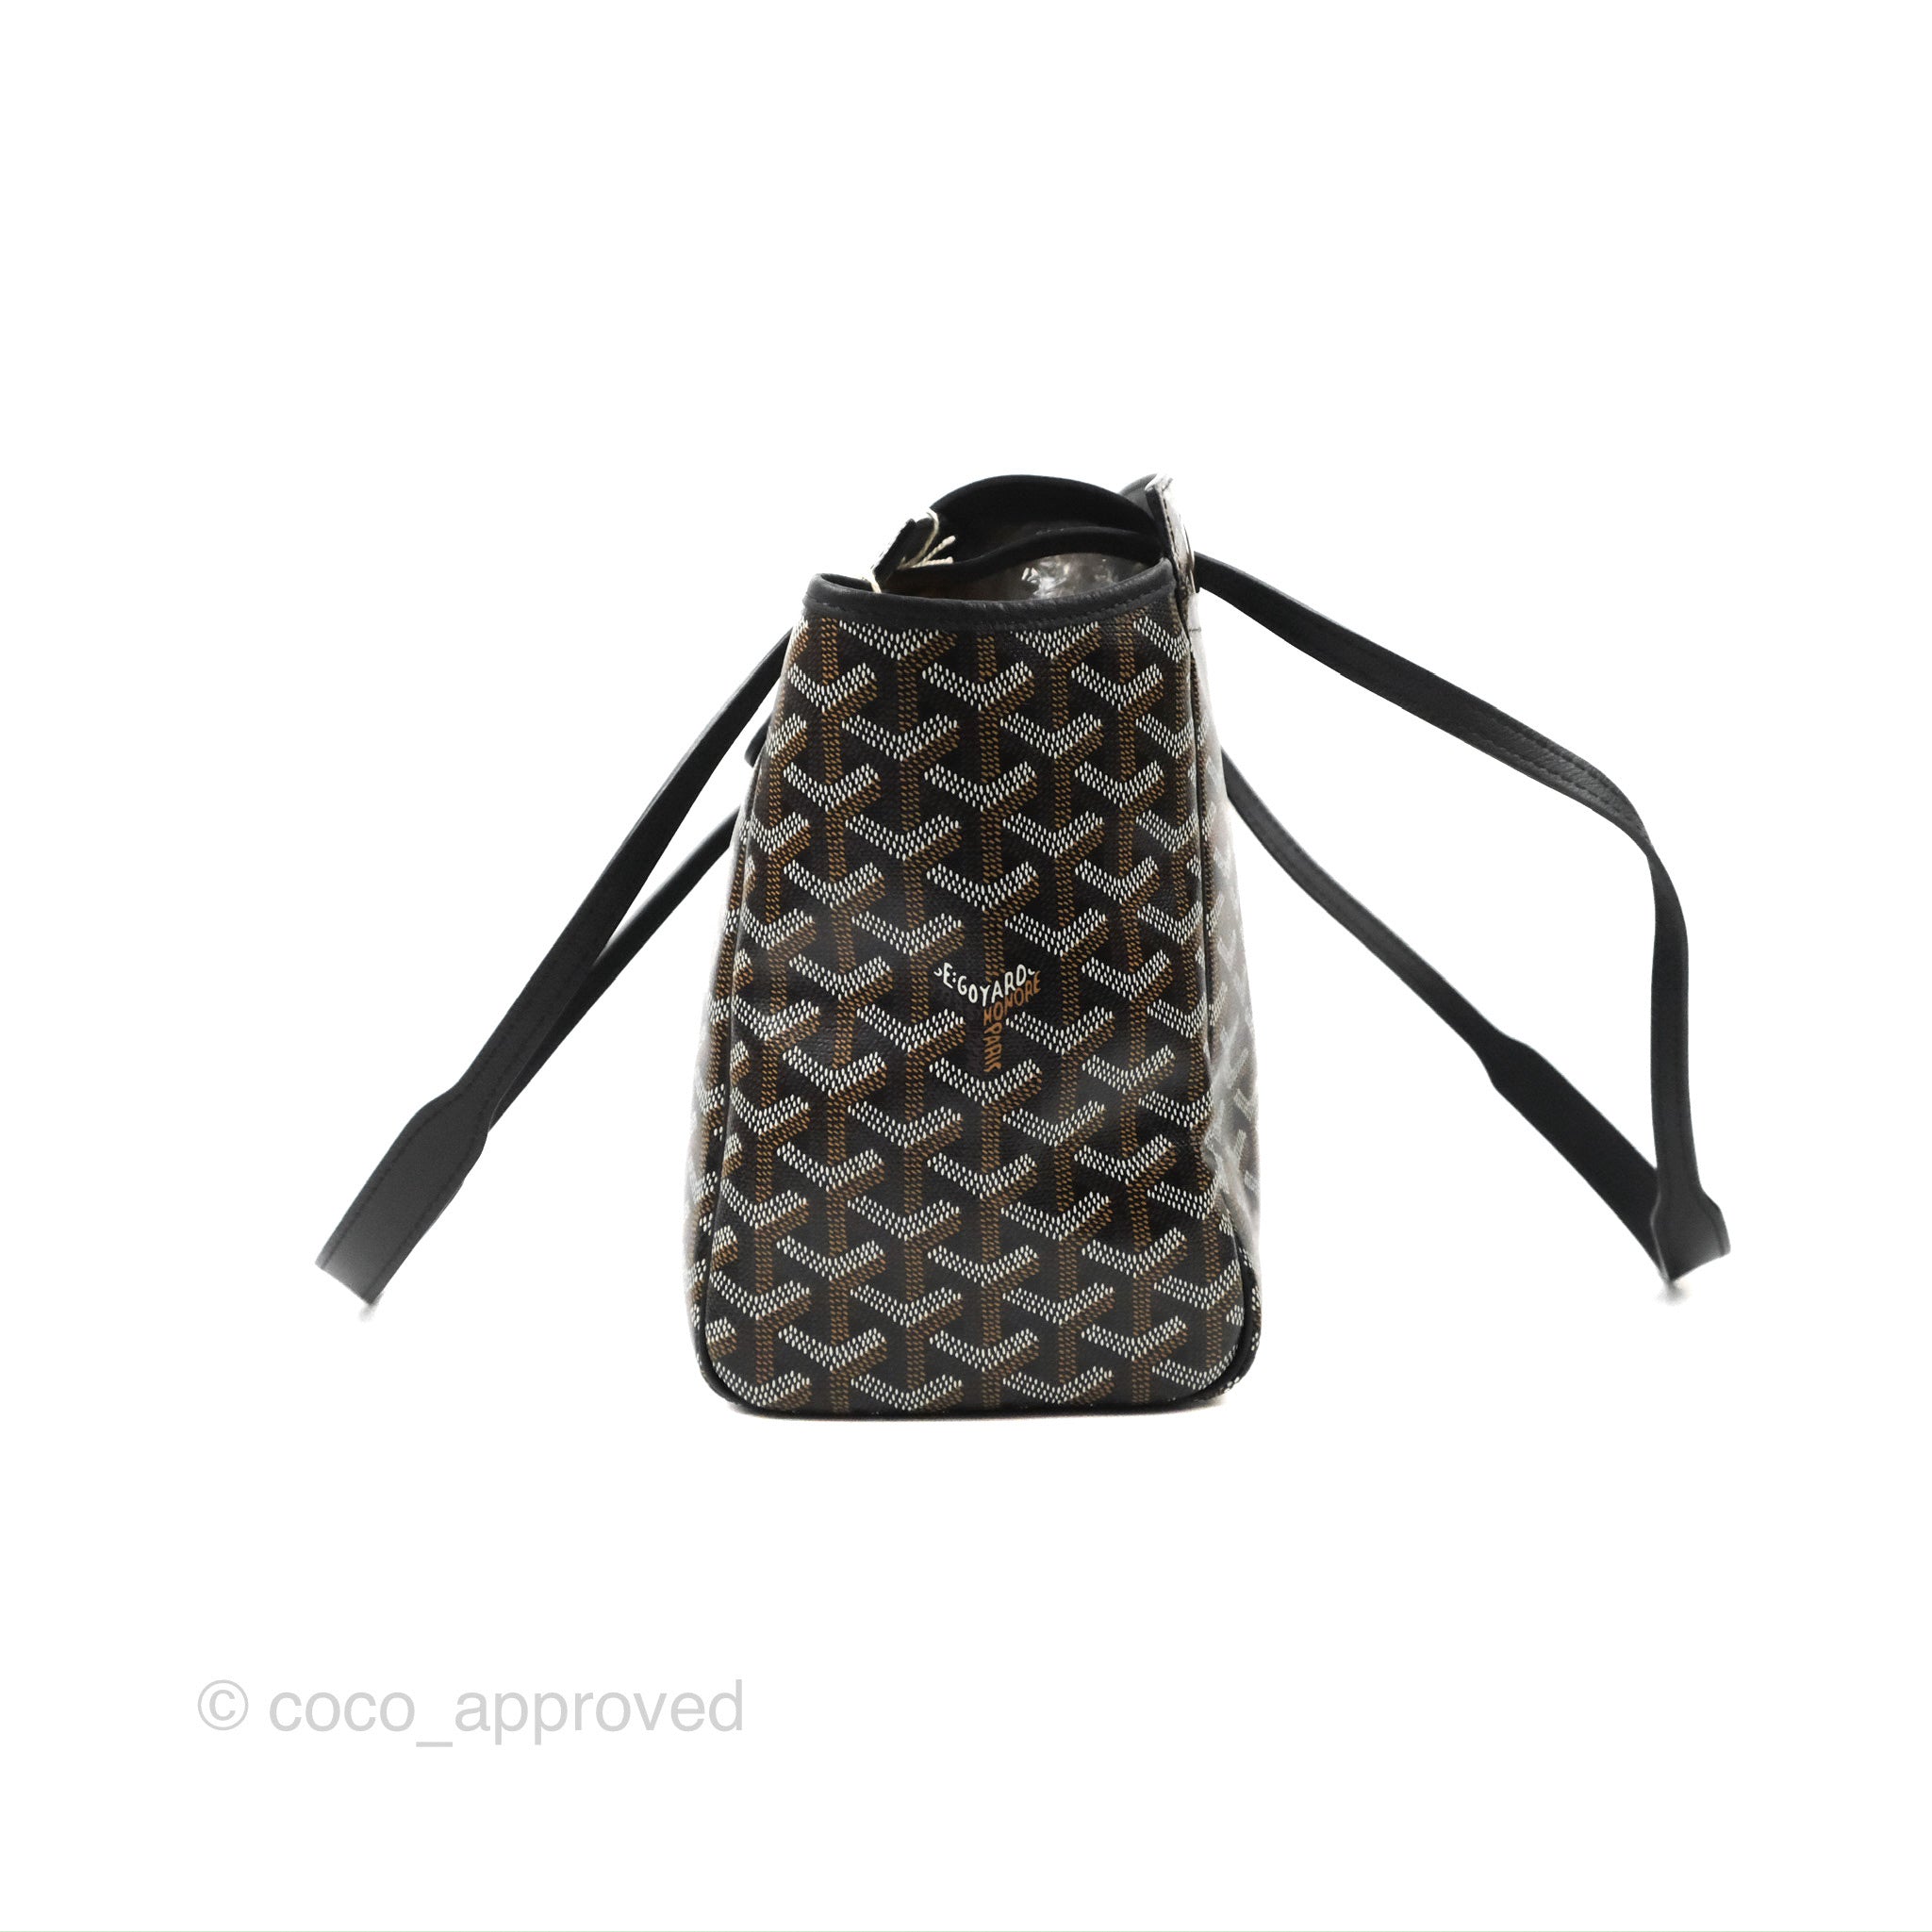 Goyard Goyardine Sac Rouette PM - Black Shoulder Bags, Handbags